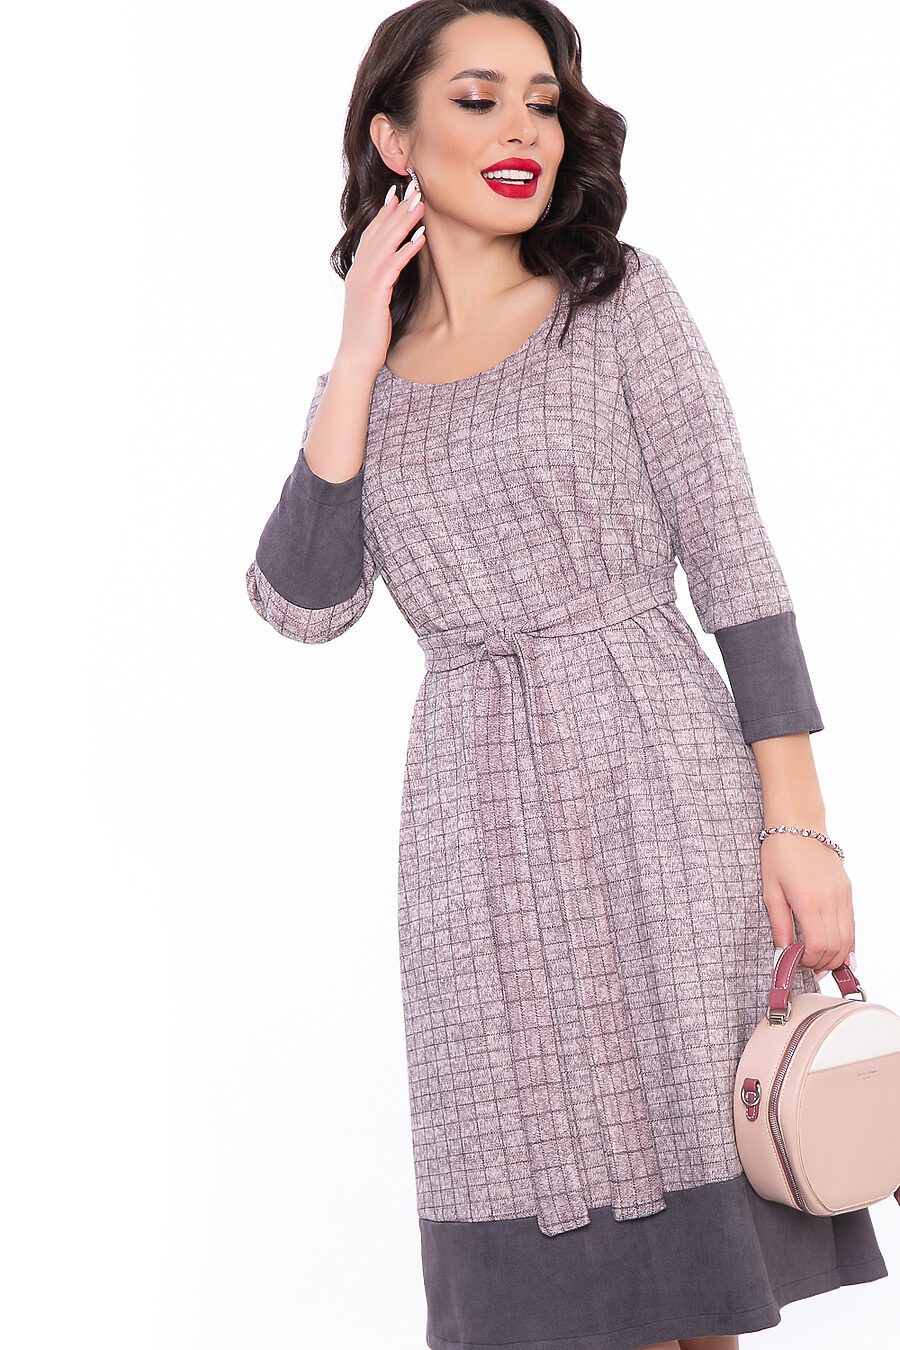 Платье LADY TAIGA (742737), купить в Moyo.moda